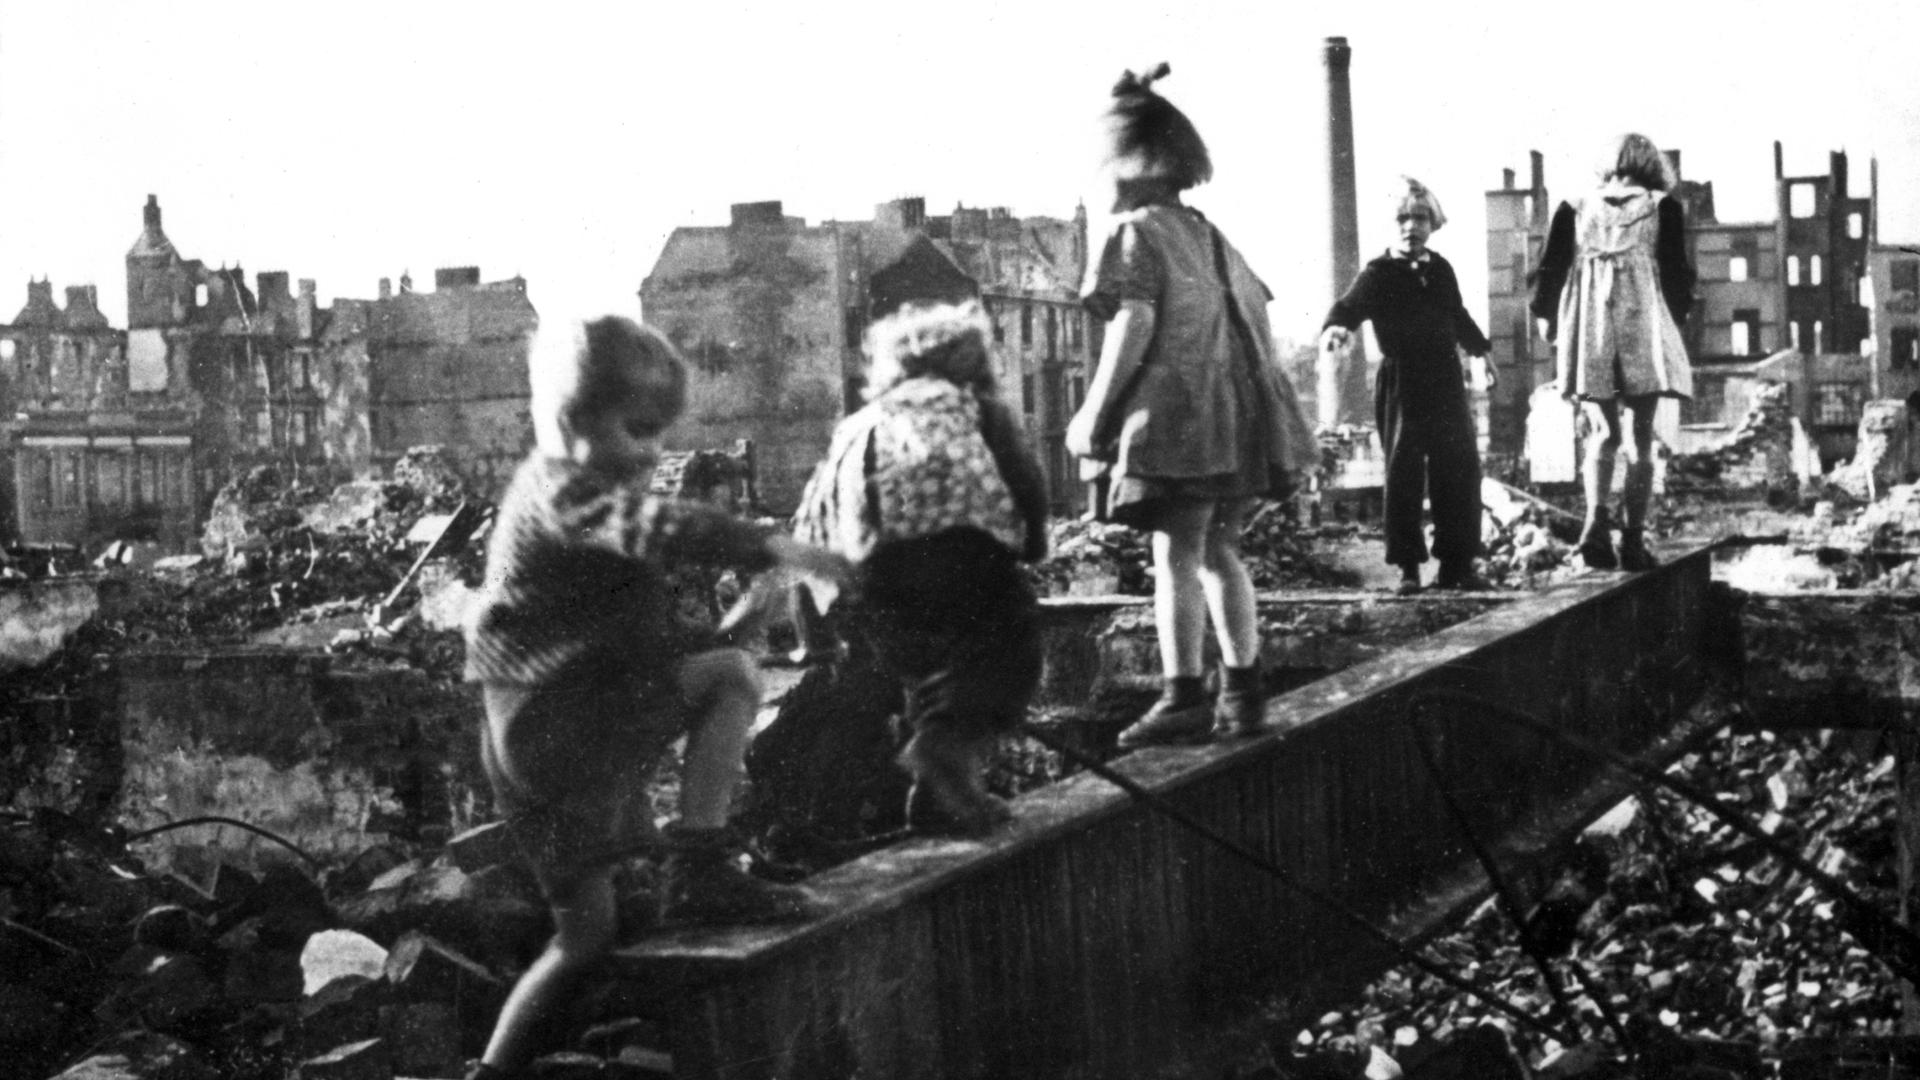 Archivbild - Die undatierte Aufnahme zeigt spielende Kinder zwischen Trümmern und Hausruinen in Hamburg.